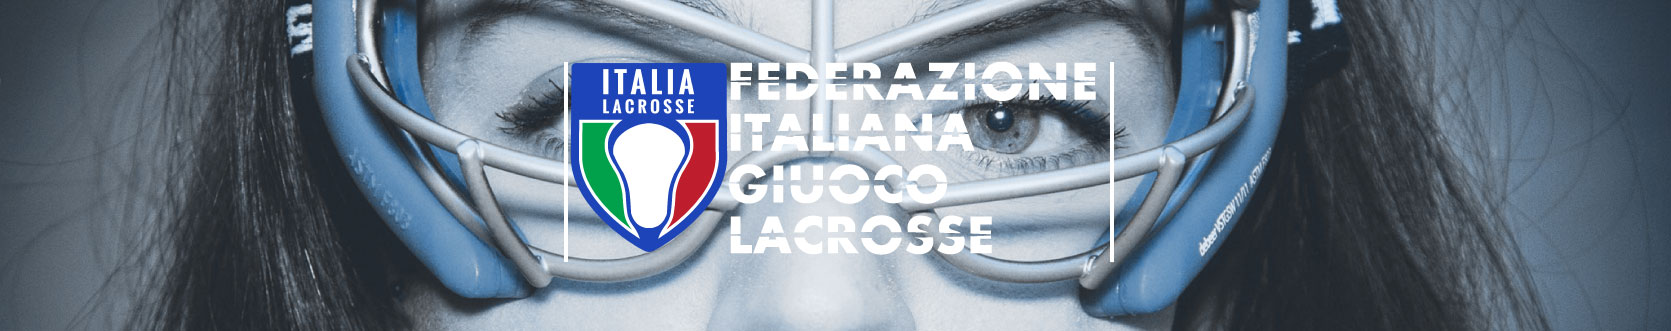 Federazione Italiana Giuoco Lacrosse